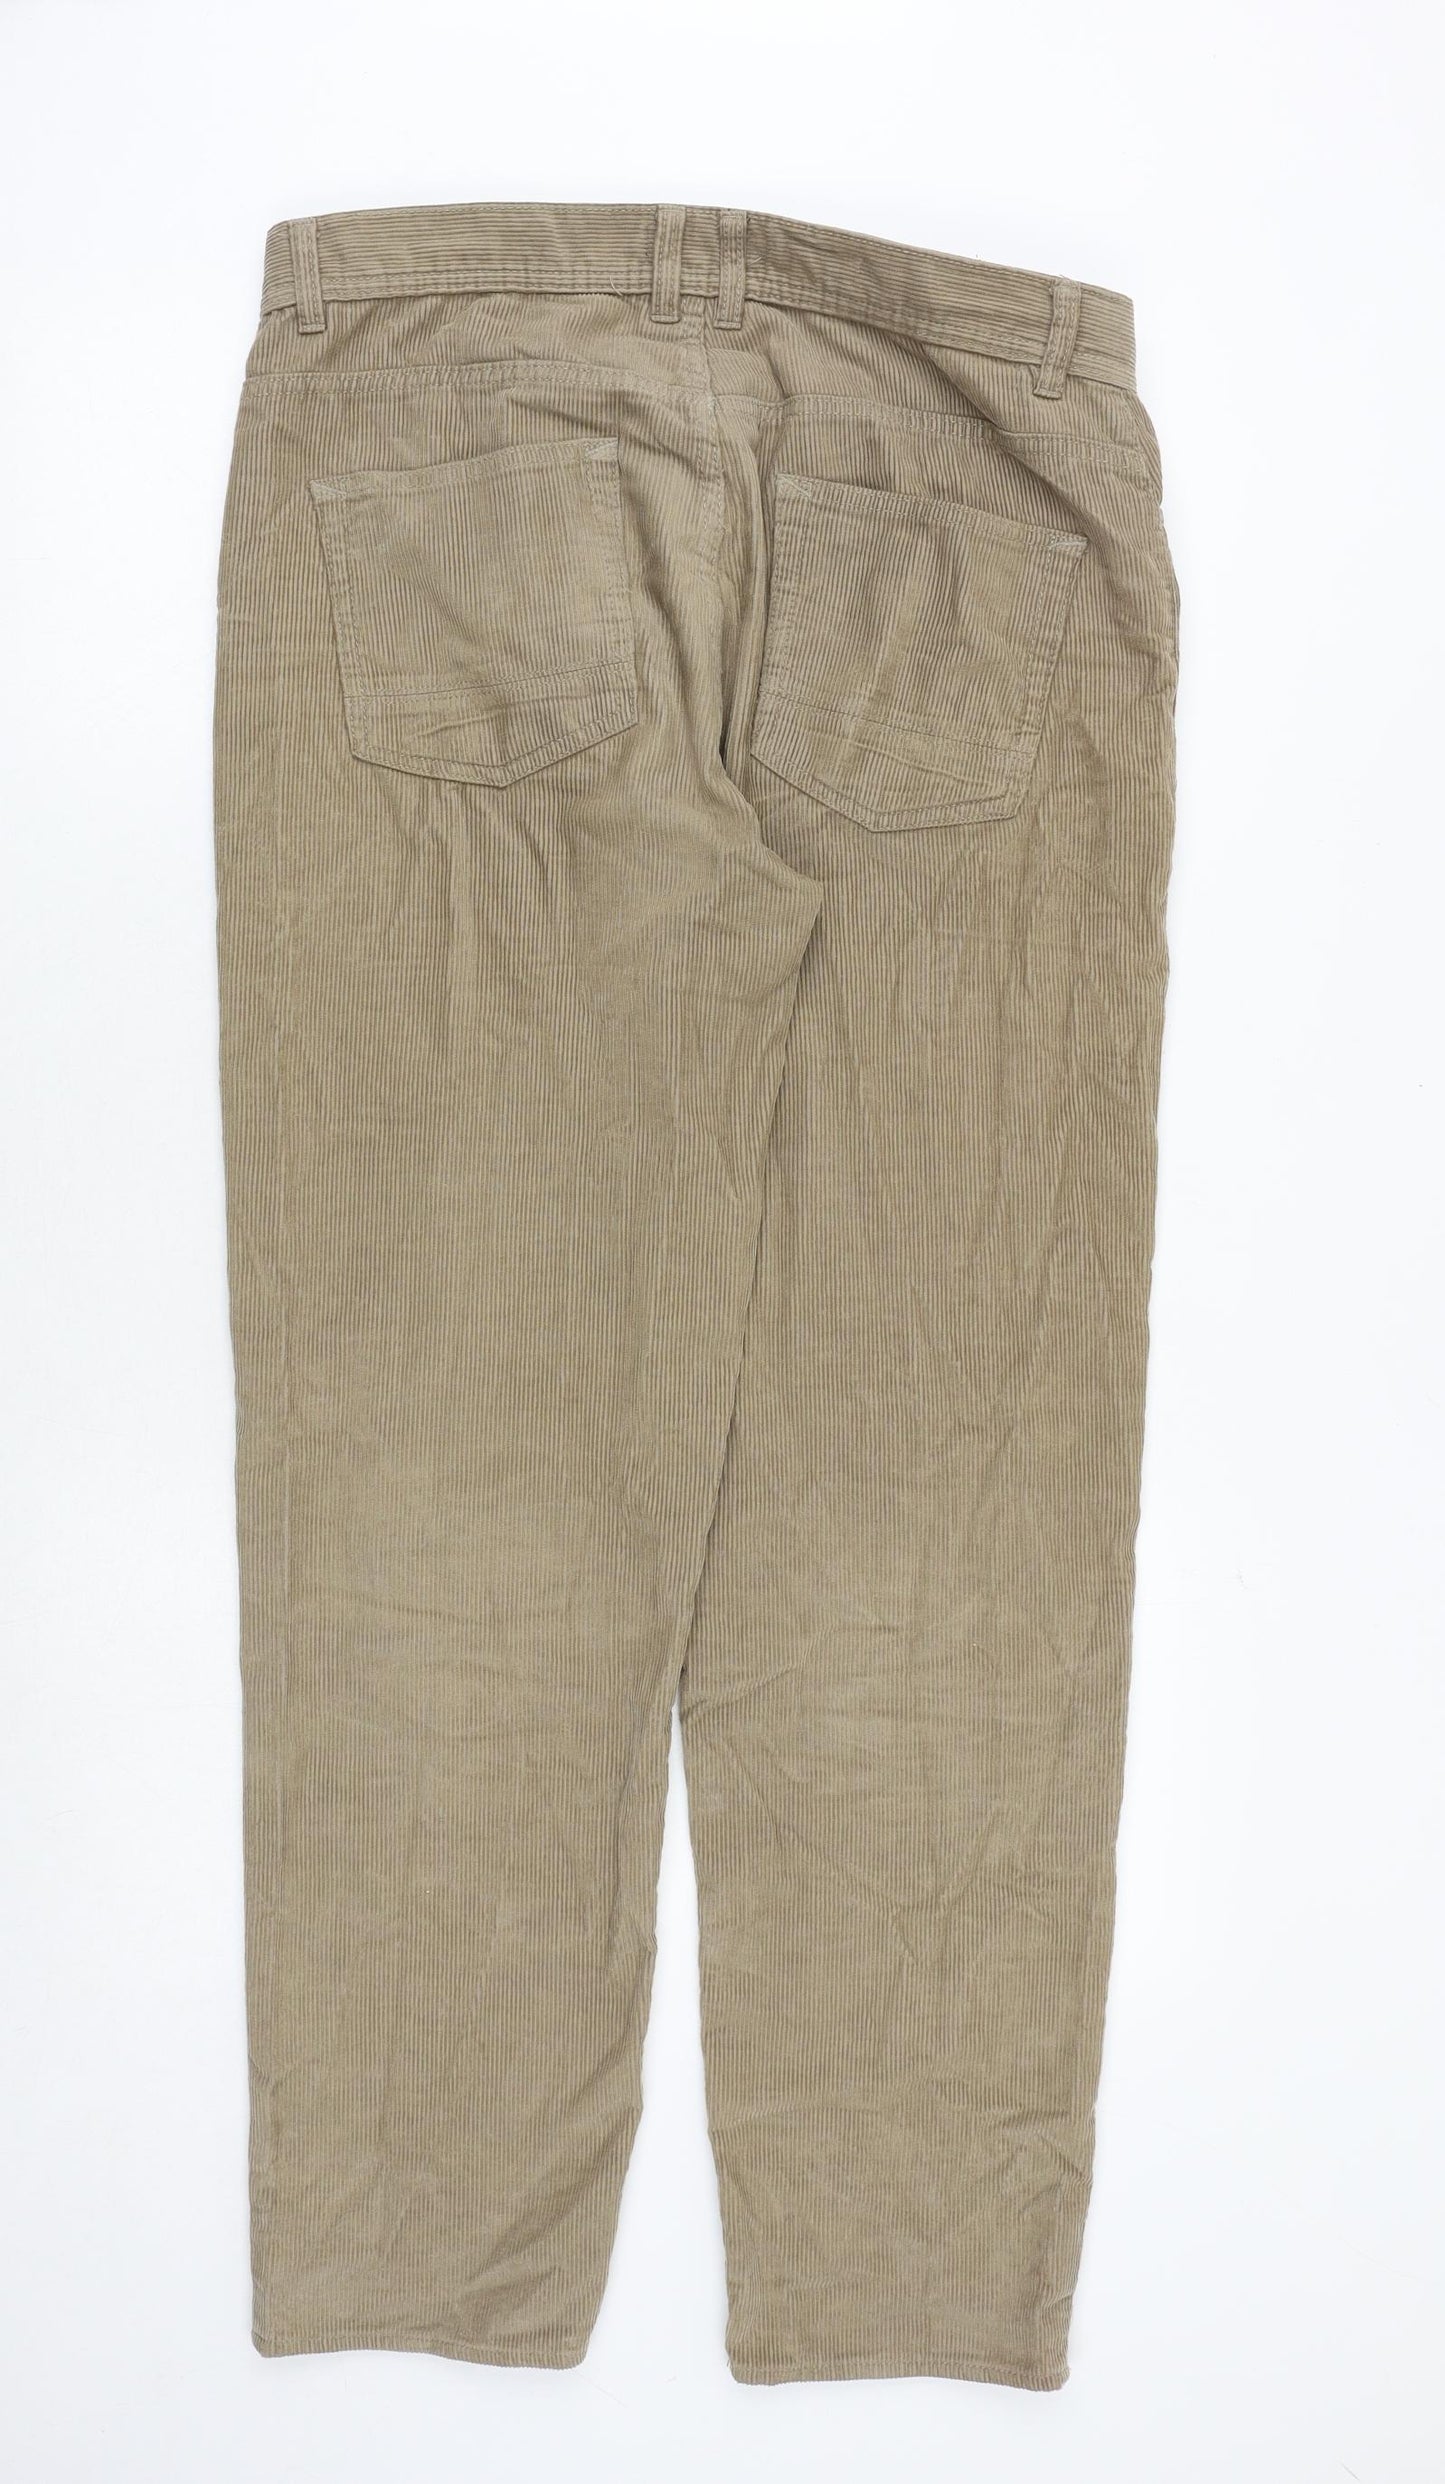 New Look Mens Beige Cotton Trousers Size 34 in Regular Zip